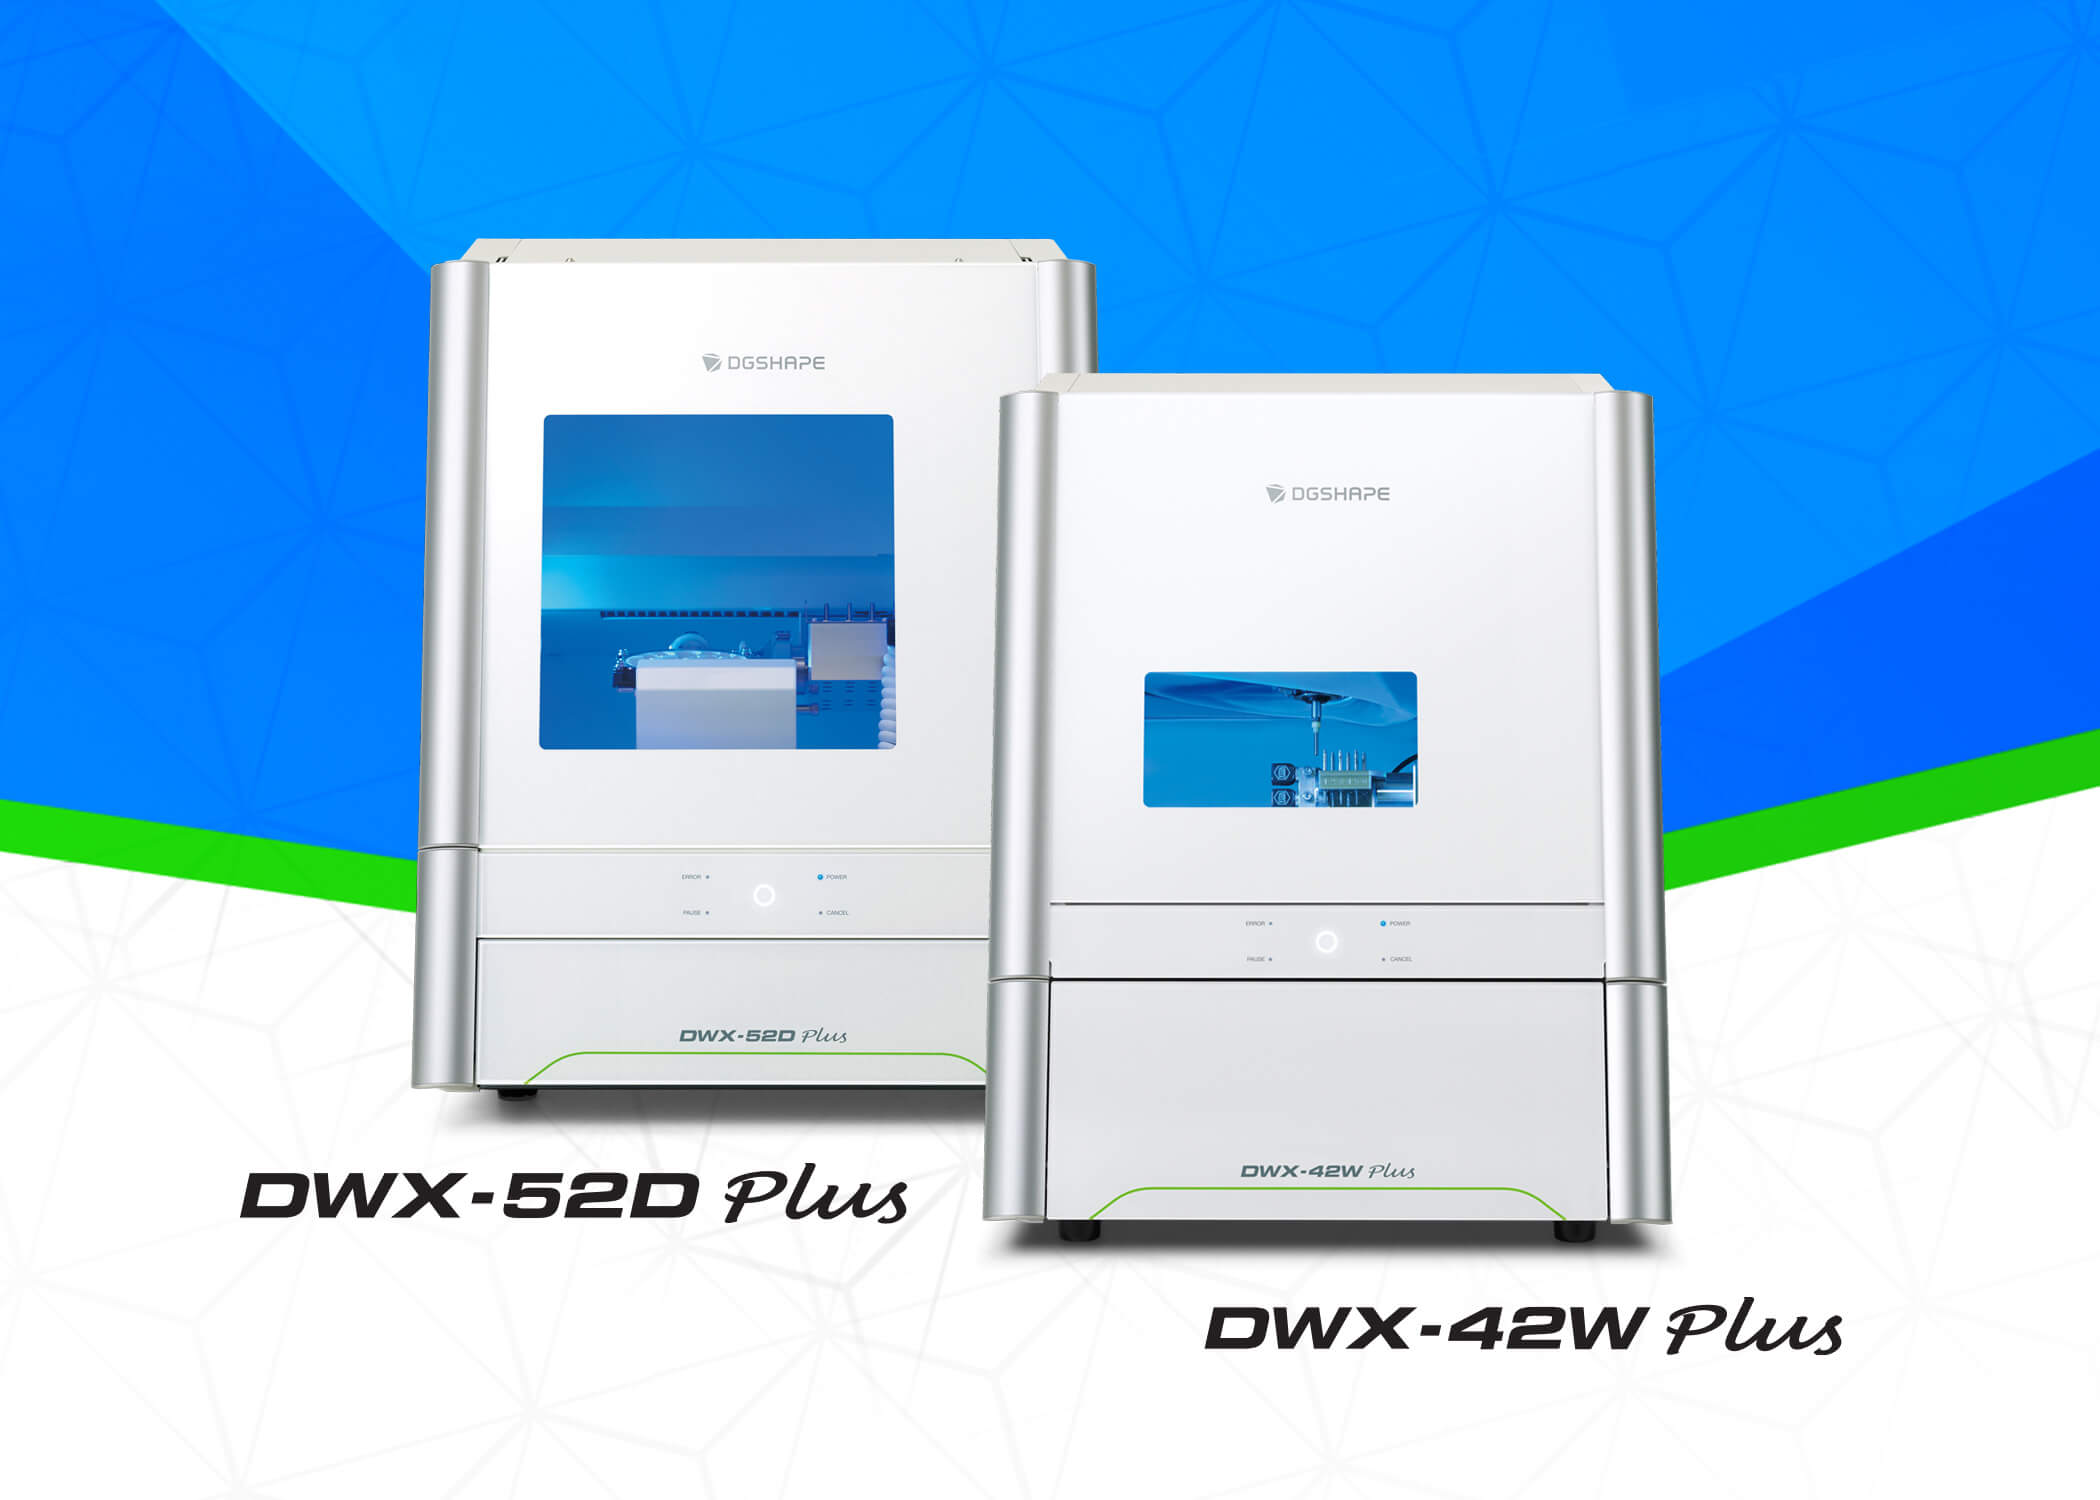 Image of Roland DGA's new DGSHAPE DWX-52D Plus and DWX-42W Plus dental mills.